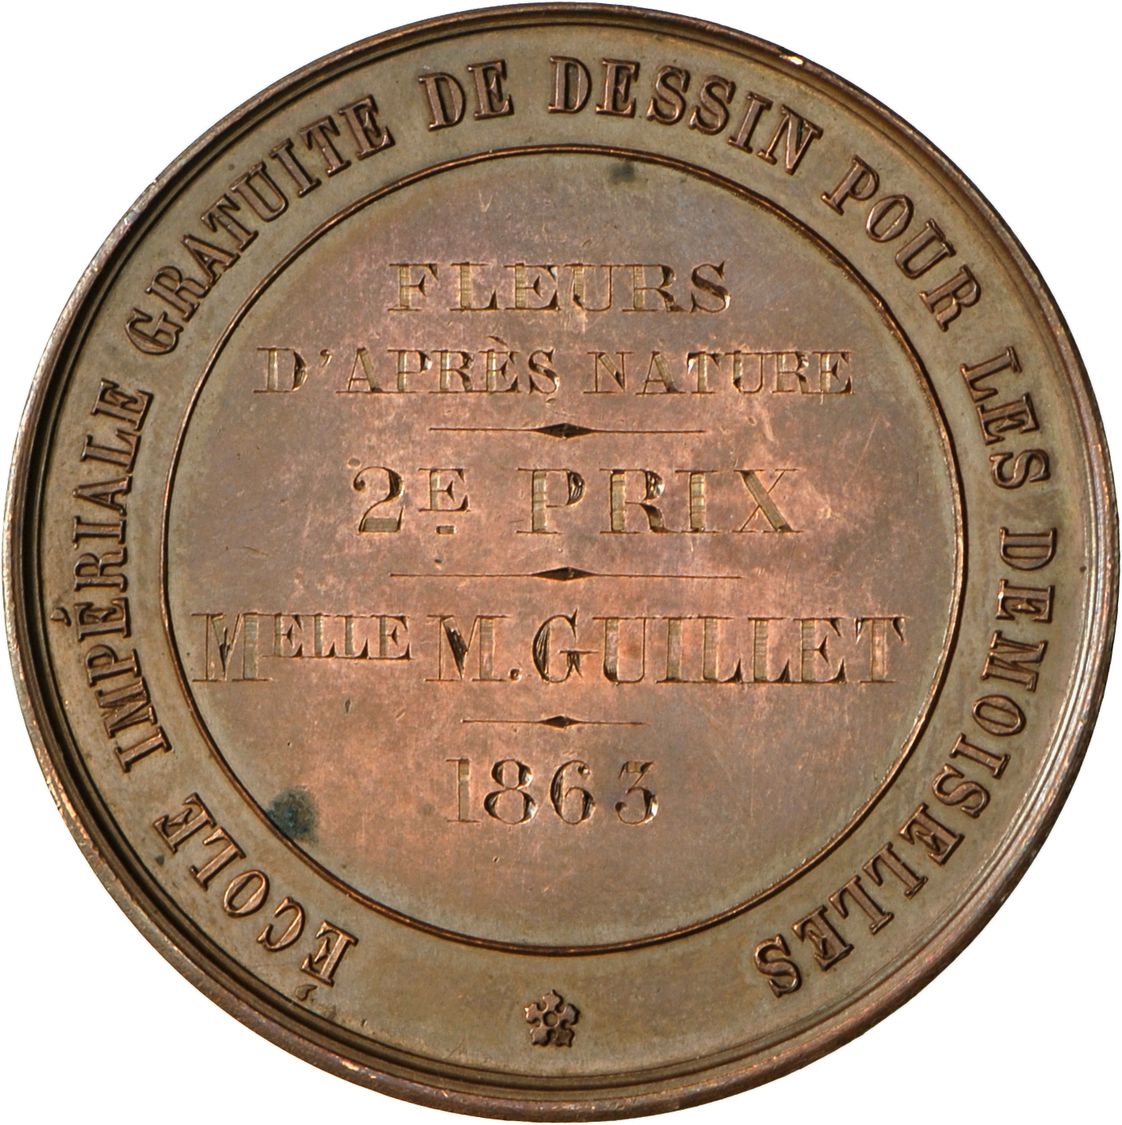 05450 Medaillen Alle Welt: Frankreich, Napoleon III. 1852-1870: Bronzemedaille, Gravur 1863, Stempel Von A. Bescher, Sch - Unclassified